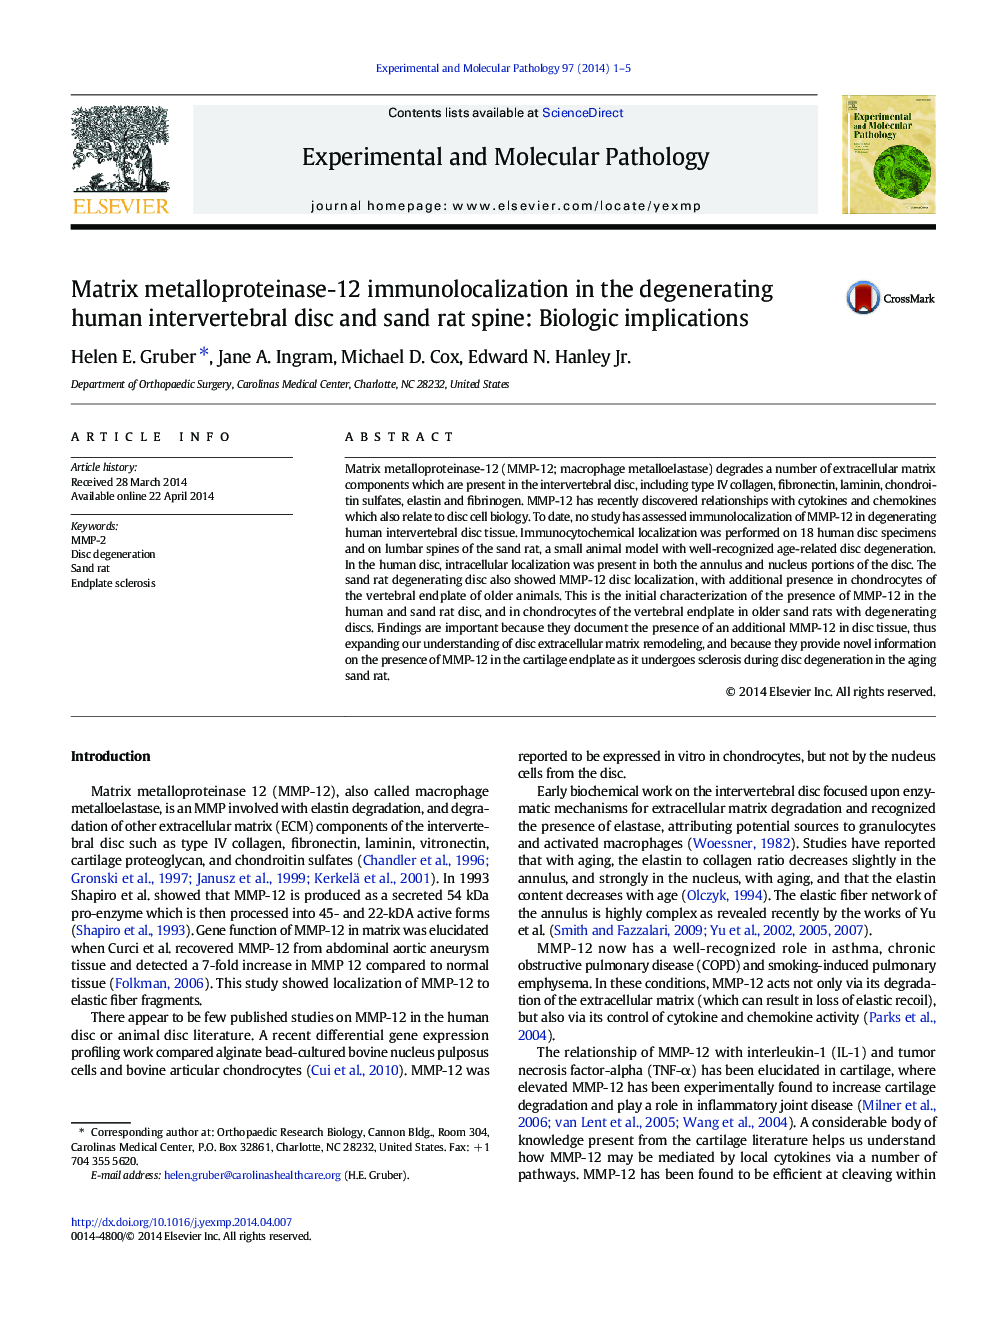 ایمونولوکالیزاسیون ماتریکس فلزوپروتئیناز-12 در دیسک بین التهابی انسدادی انسان و ستون فقرات شن و ماسه: پیامدهای بیولوژیکی 